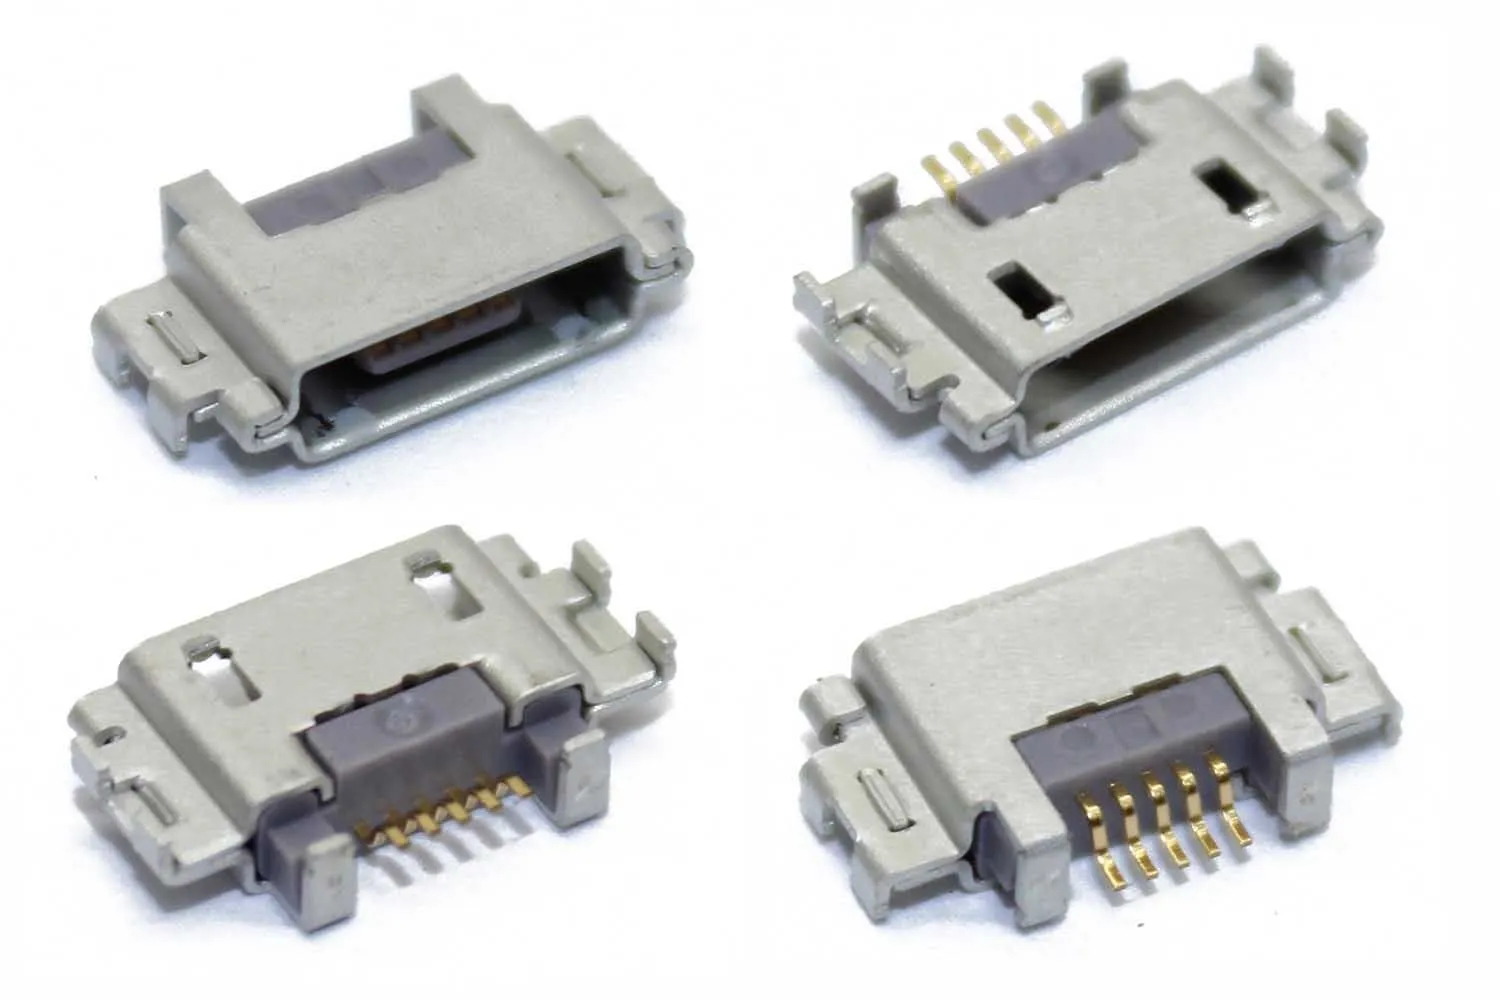 Разъем зарядки MicroUSB 5 pin в середину платы Sony LT22i Xperia P, LT26i Xperia S